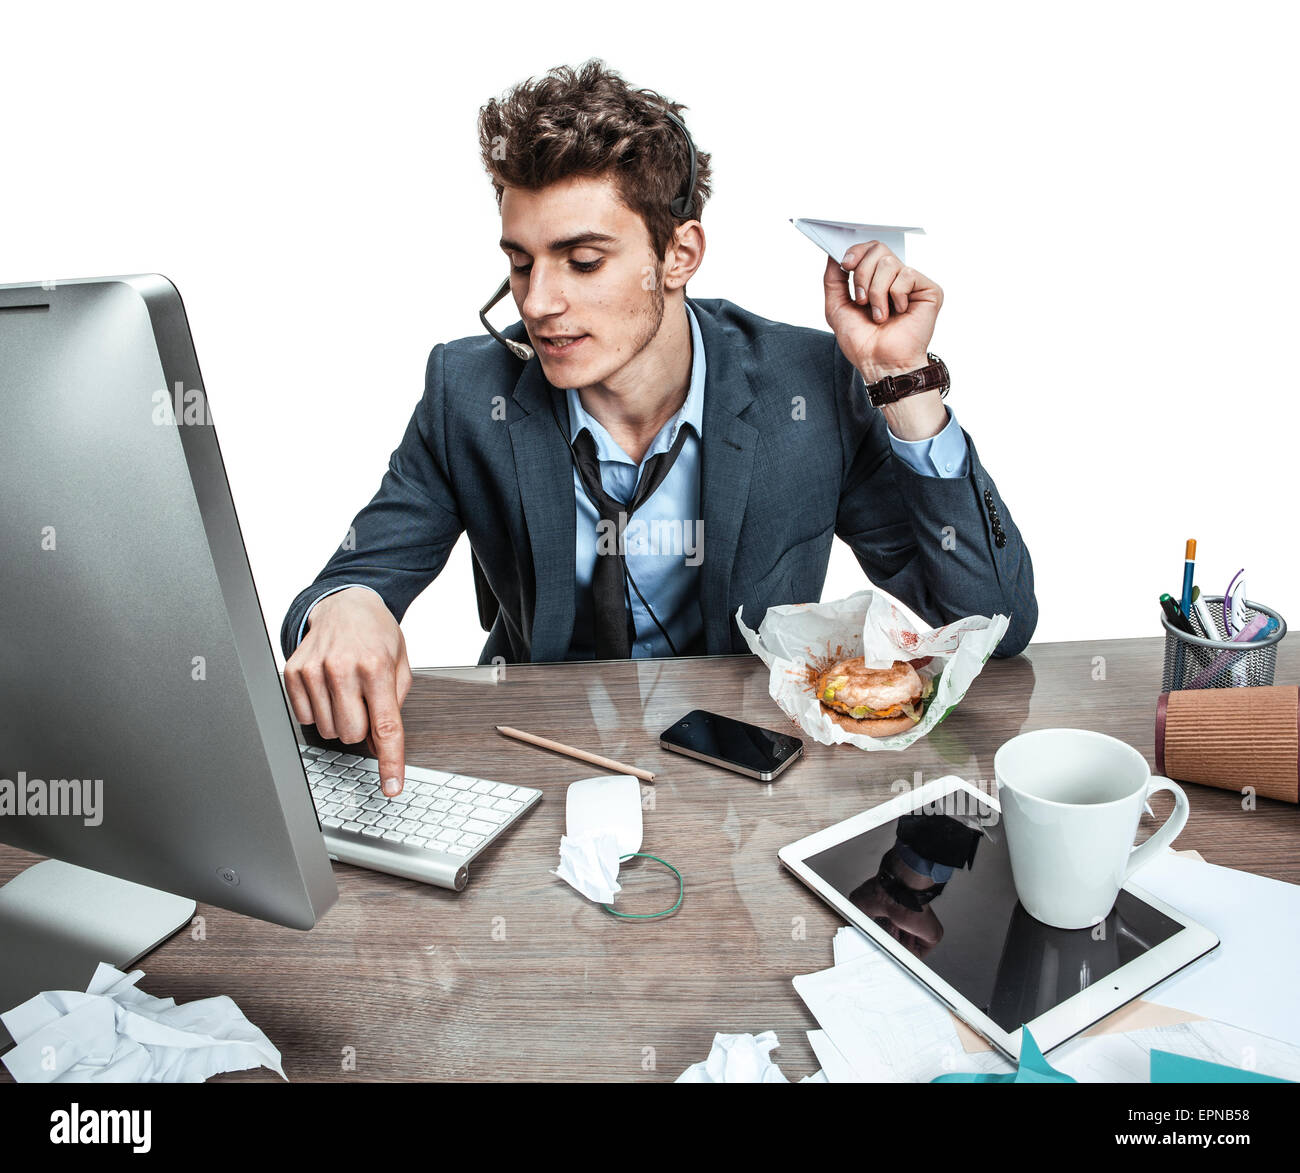 Guy with paper plane dans sa main la saisie sur un clavier d'ordinateur de bureau moderne / place de travail à l'homme, l'indolence et la paresse concept Banque D'Images